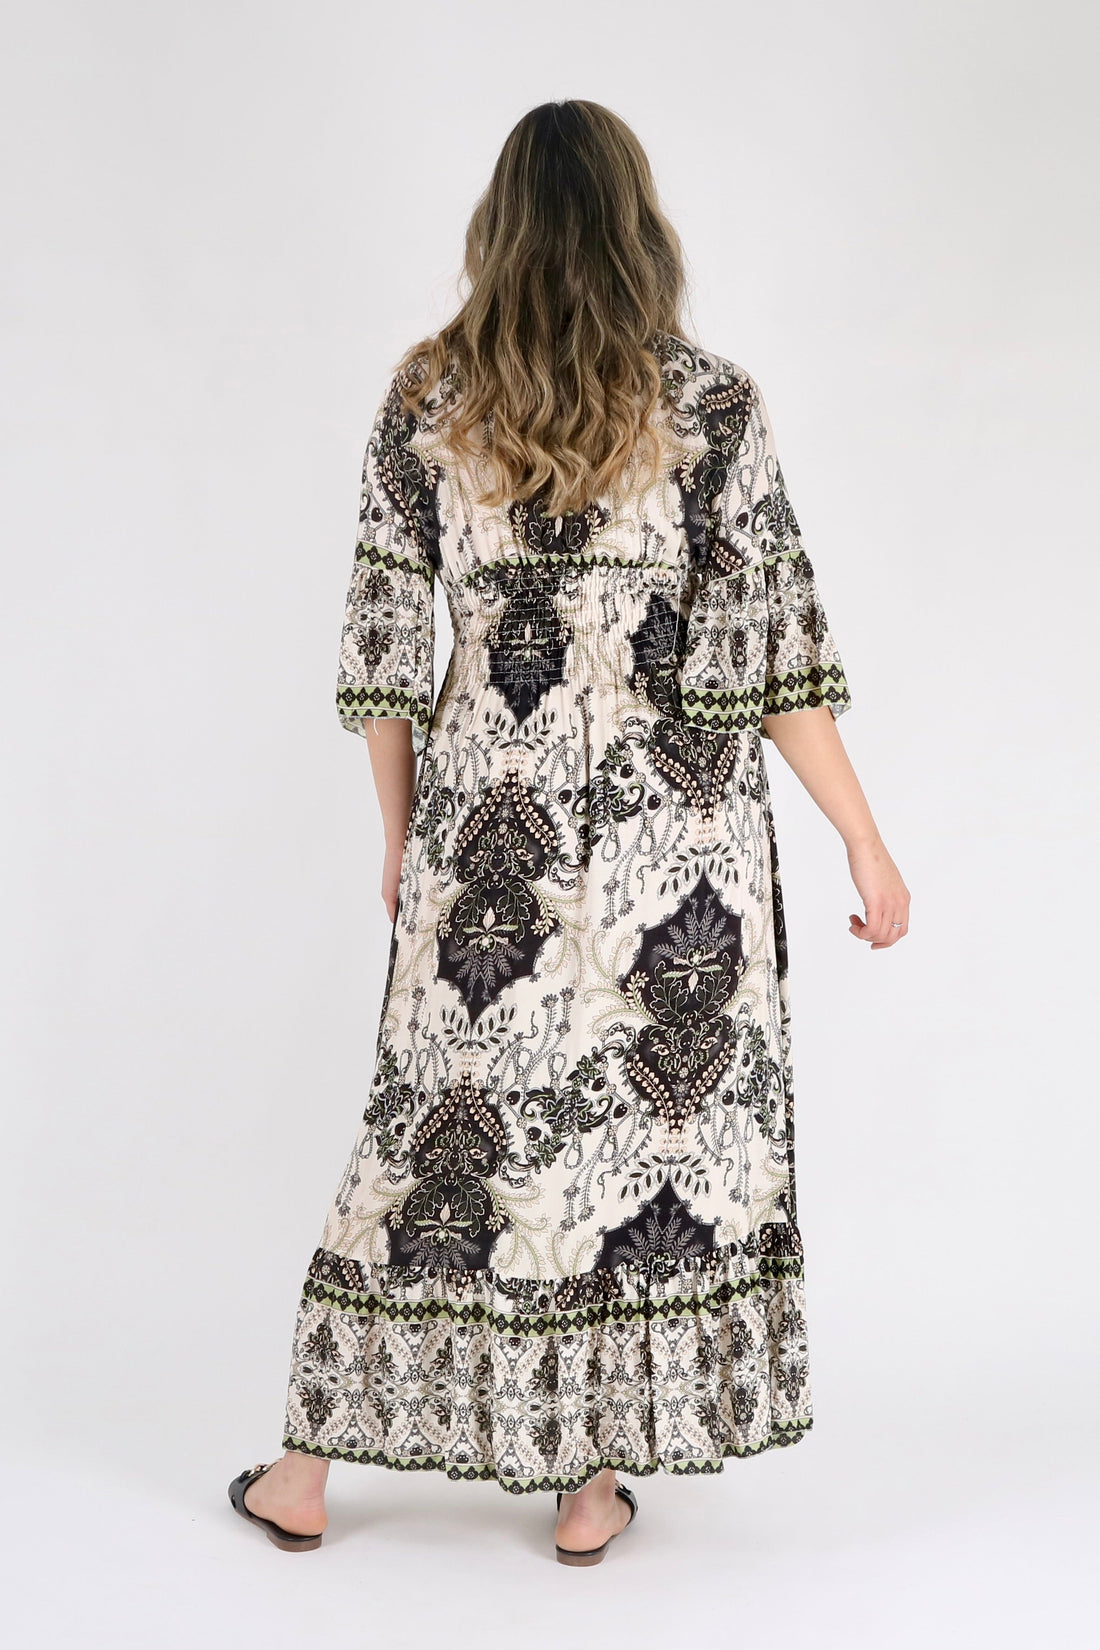 Black Floral Print Ruffle Hem Maxi Dress - Pinstripe